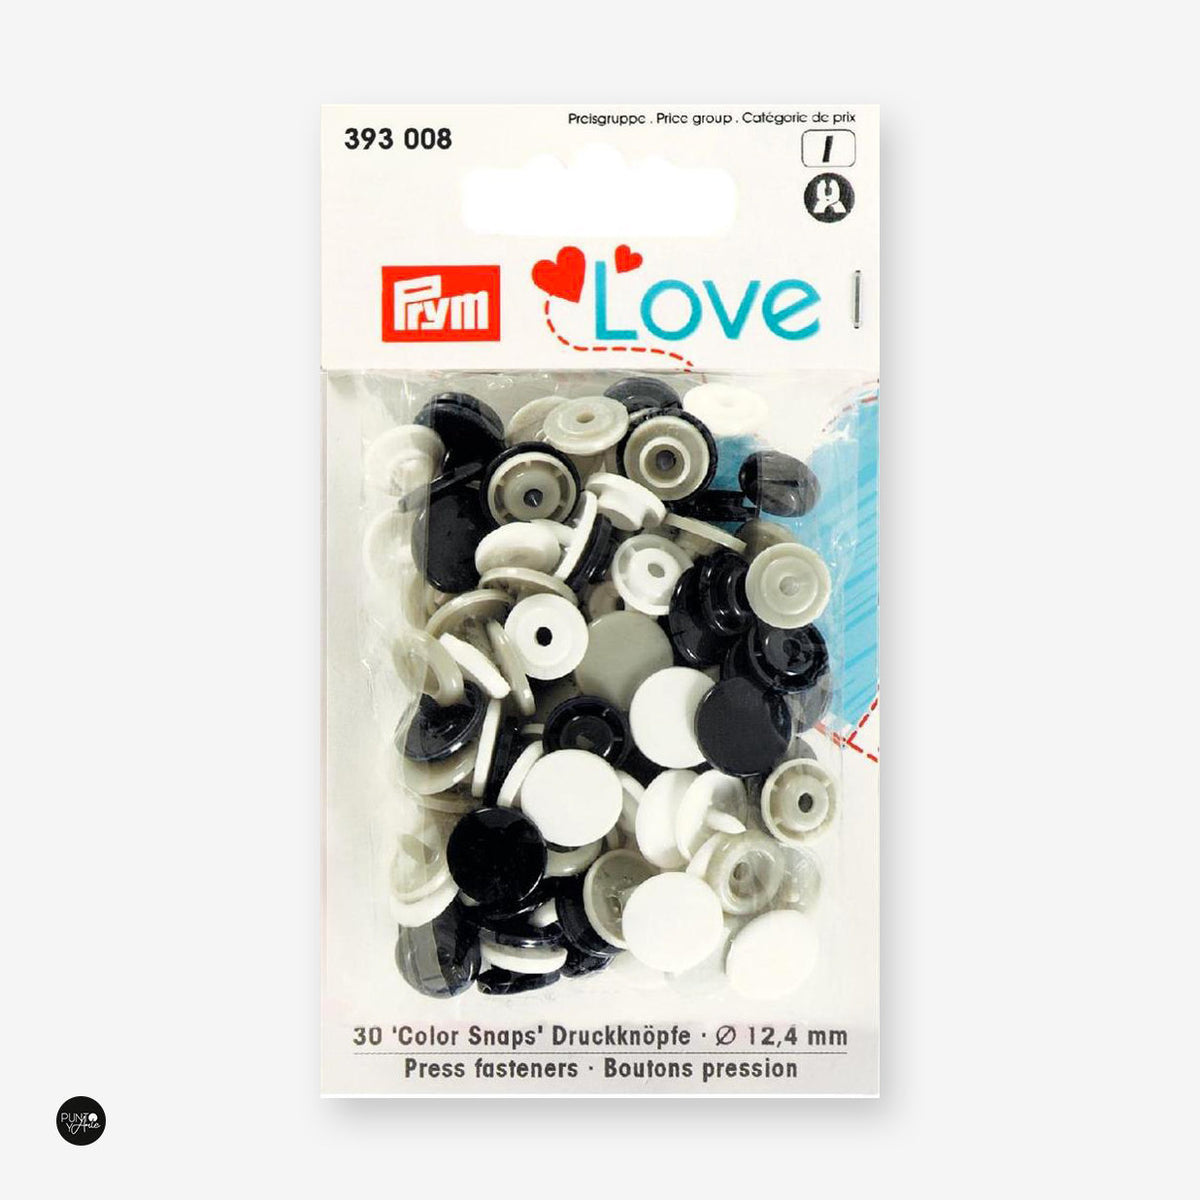 Botones de Presión Prym Love Color Snap 12,4mm